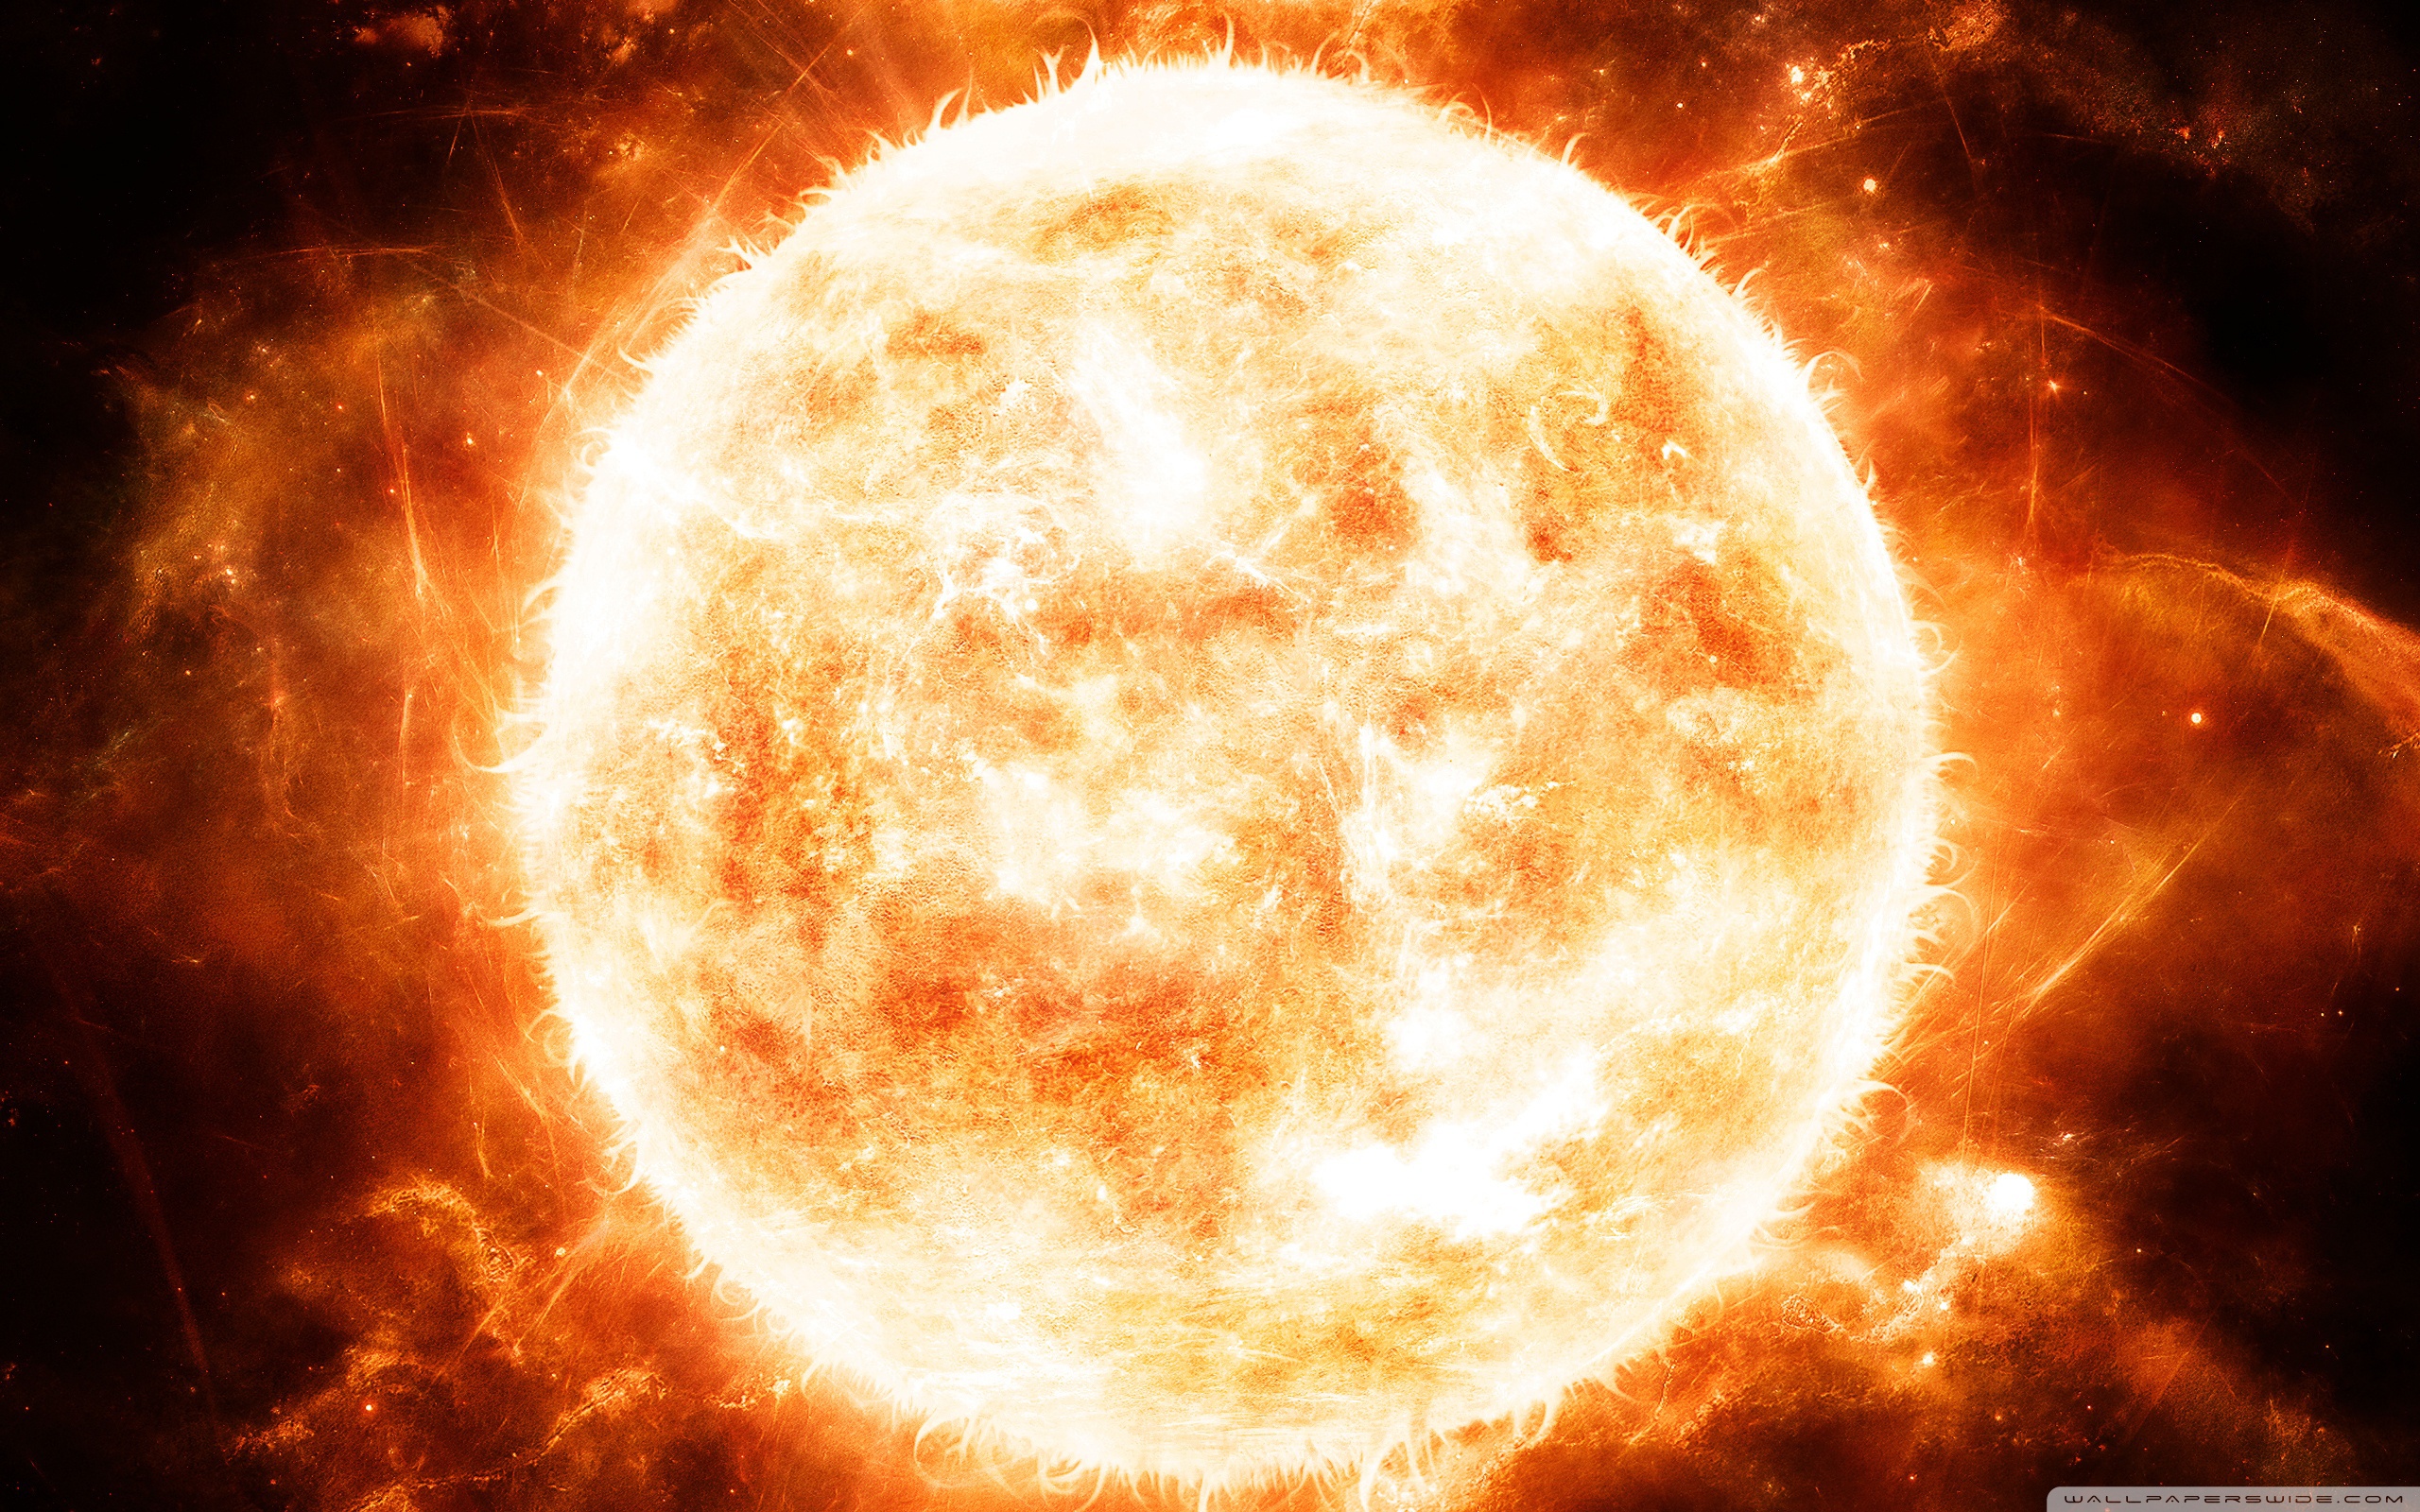 Space_The_burning_sun_036520_.jpg